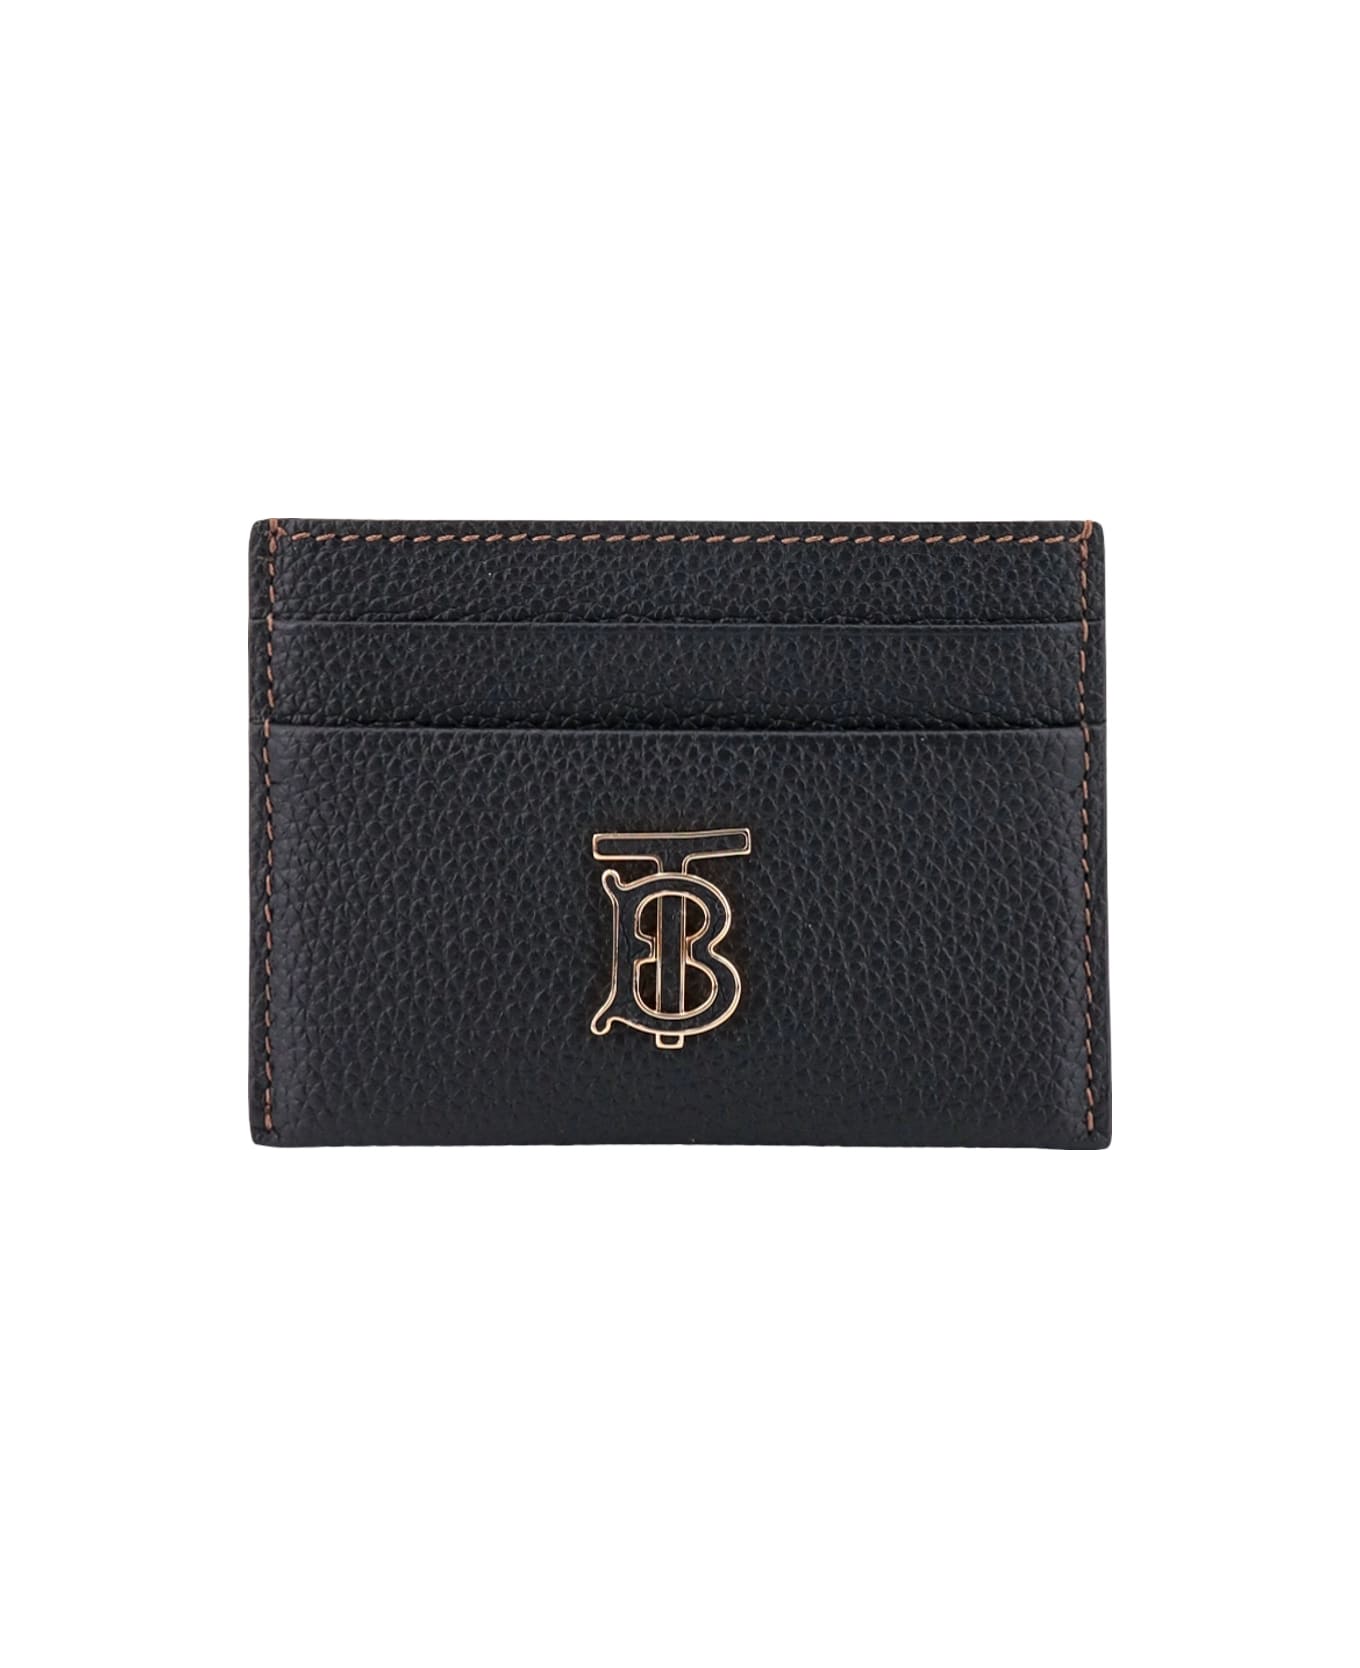 Burberry Tb Lgl Card Case - Black デジタルアクセサリー